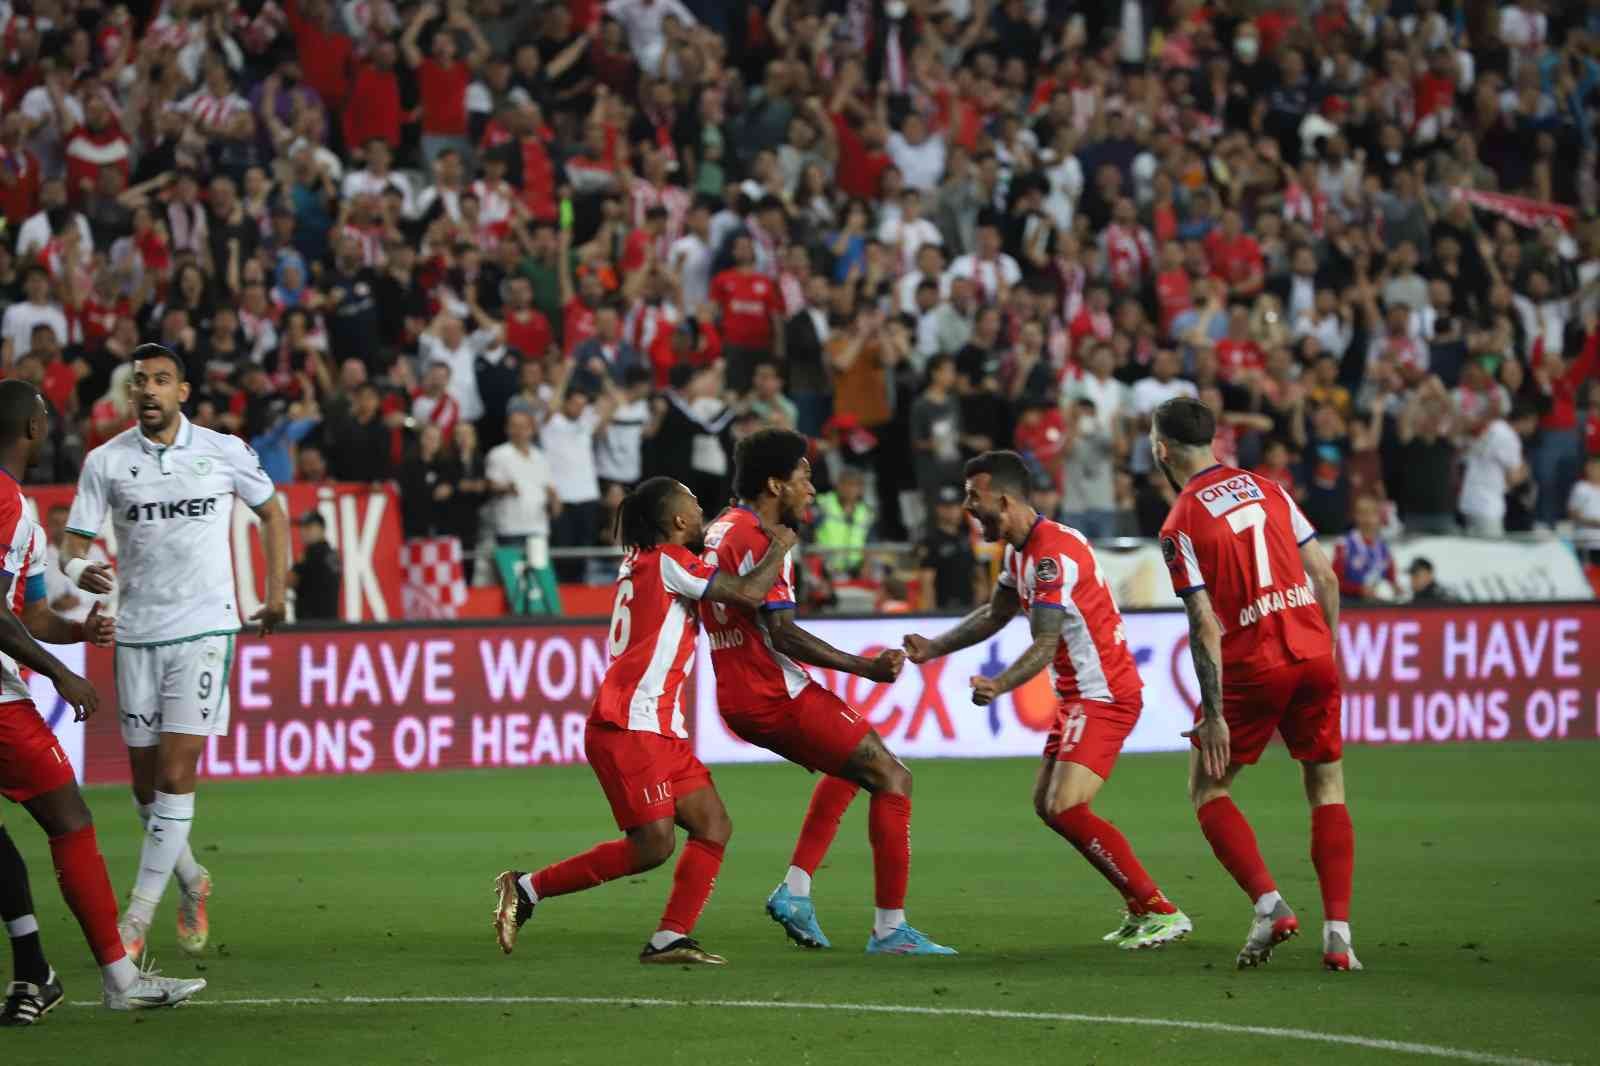 Spor Toto Süper Lig: Antalyaspor: 3 - Konyaspor: 2 (Maç sonucu)